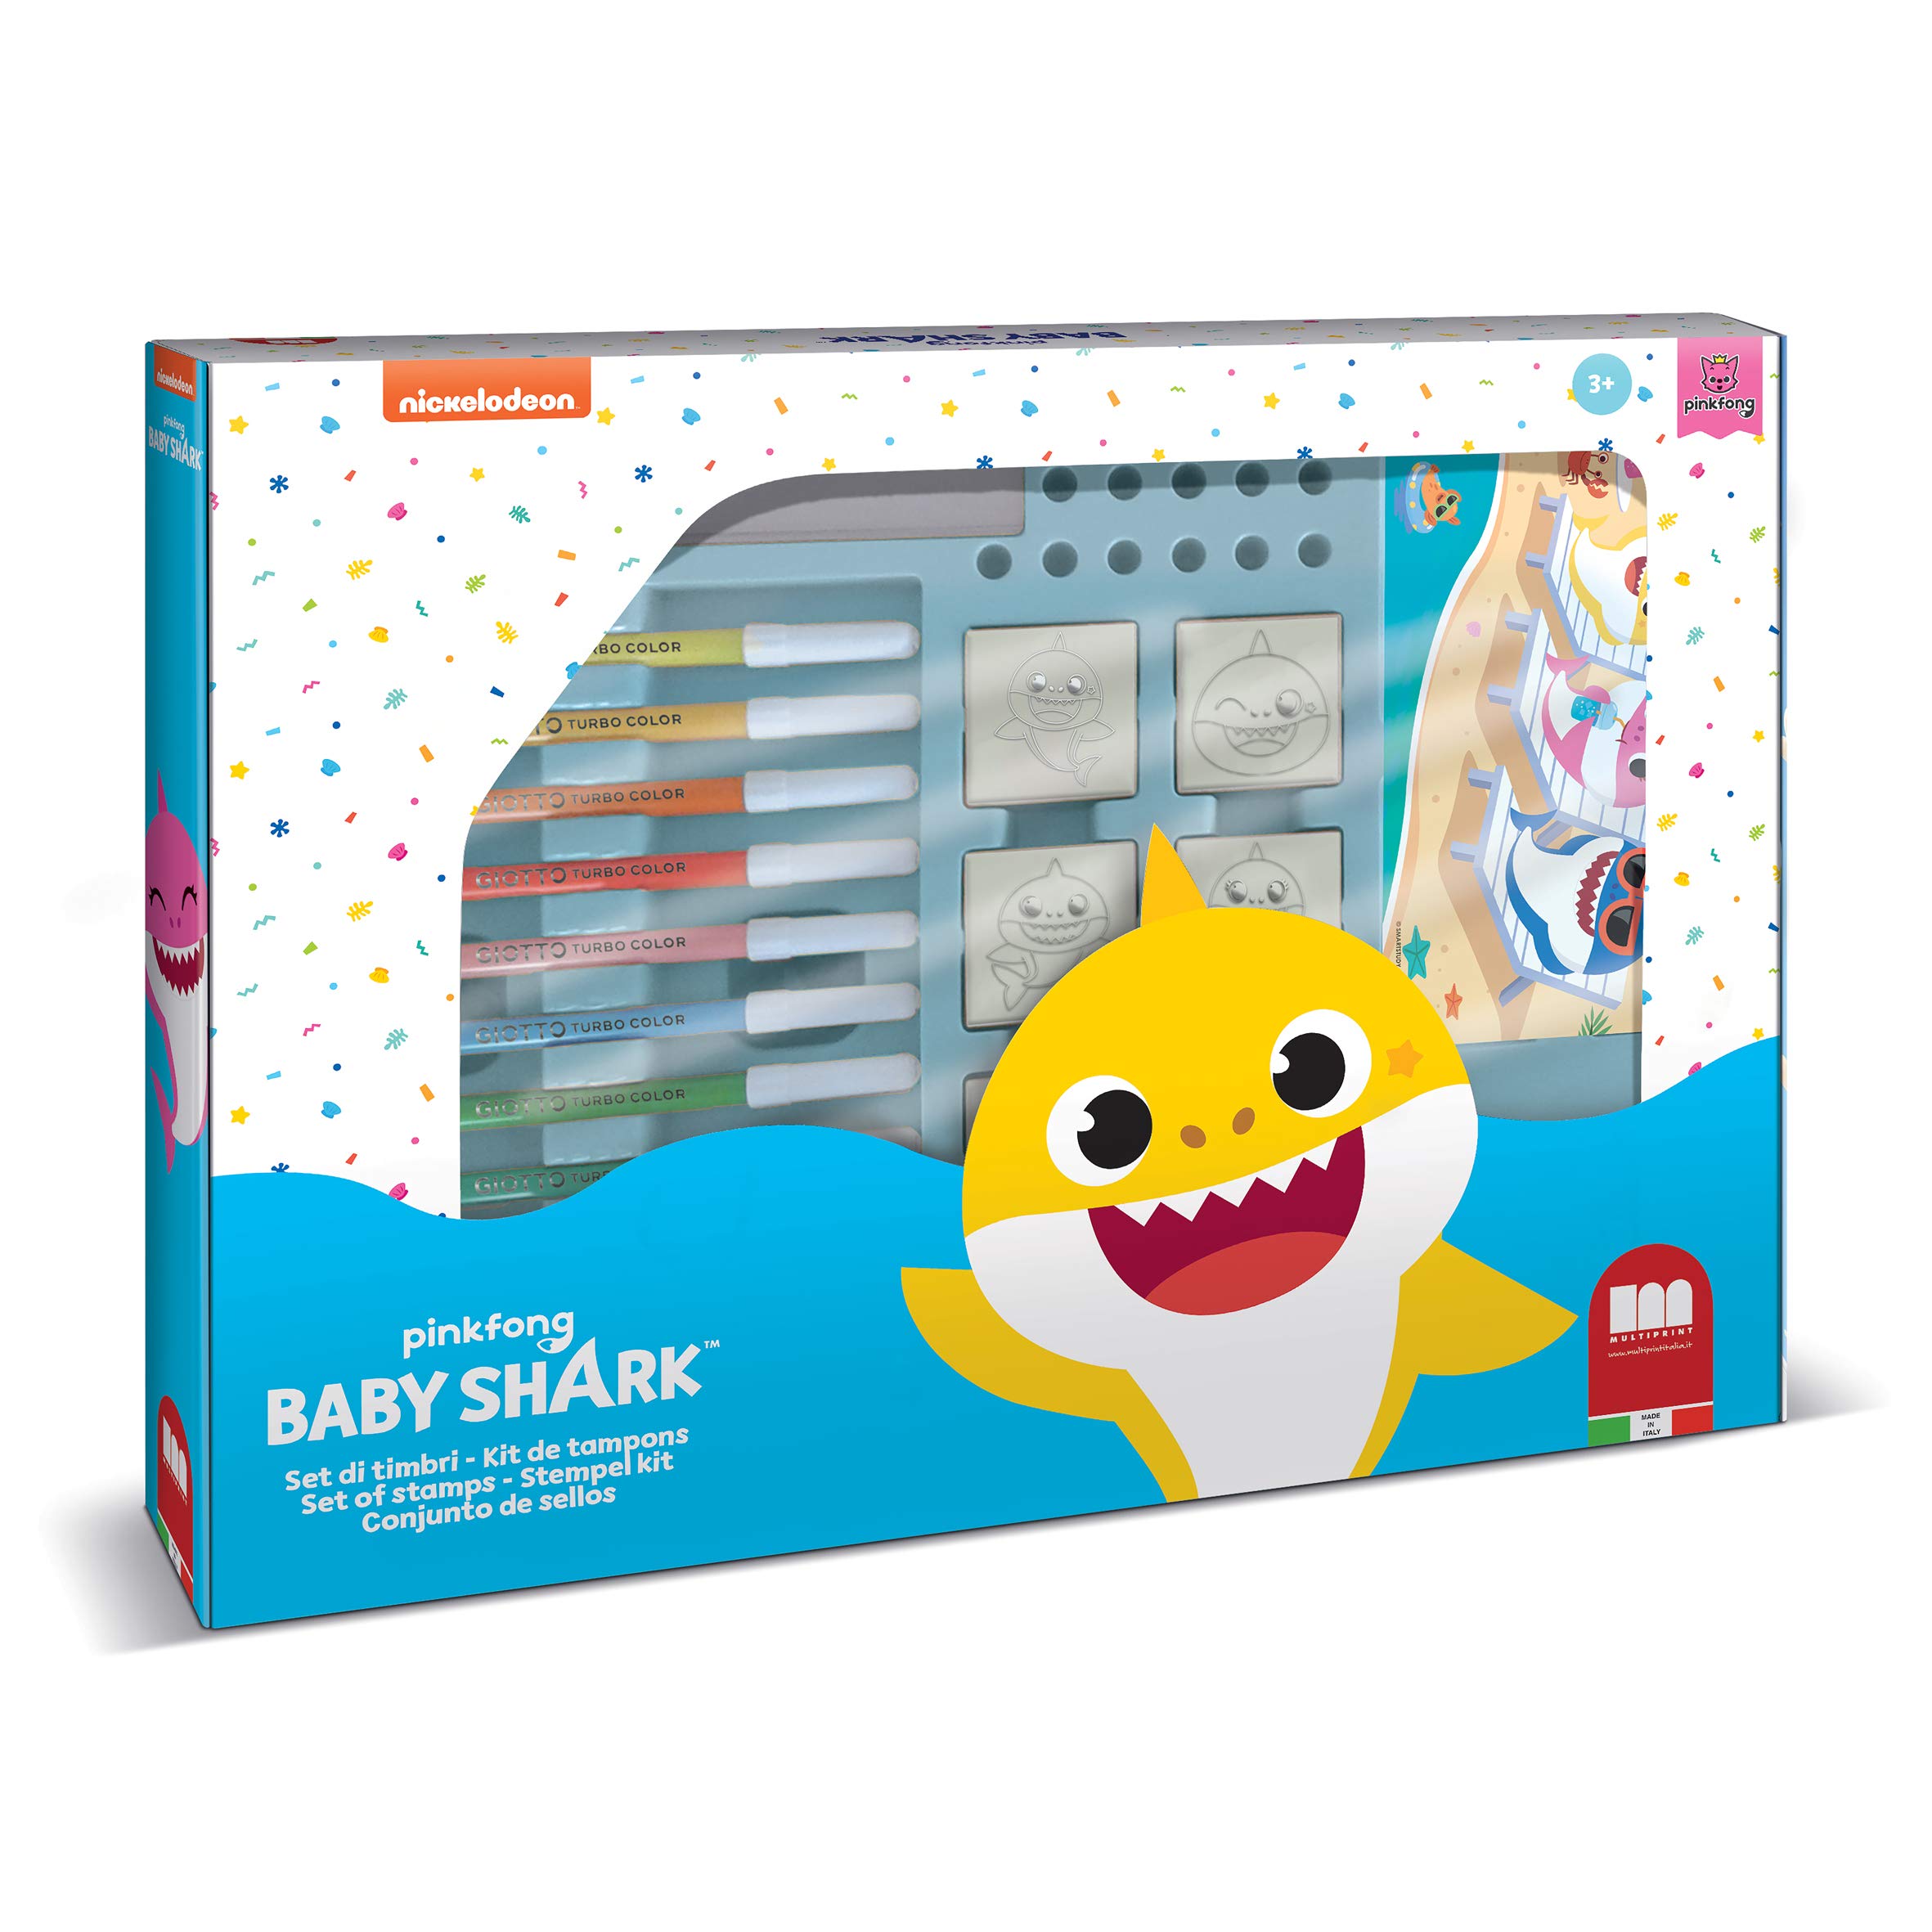 Multiprint Maxi Tasche 7 Stempel für Kinder Baby Shark, 100% Made in Italy, Benutzerdefinierte Stempelset Kinder, in Holz und Naturkautschuk, Ungiftige Waschbare Tinte, Geschenkidee, Art.04995